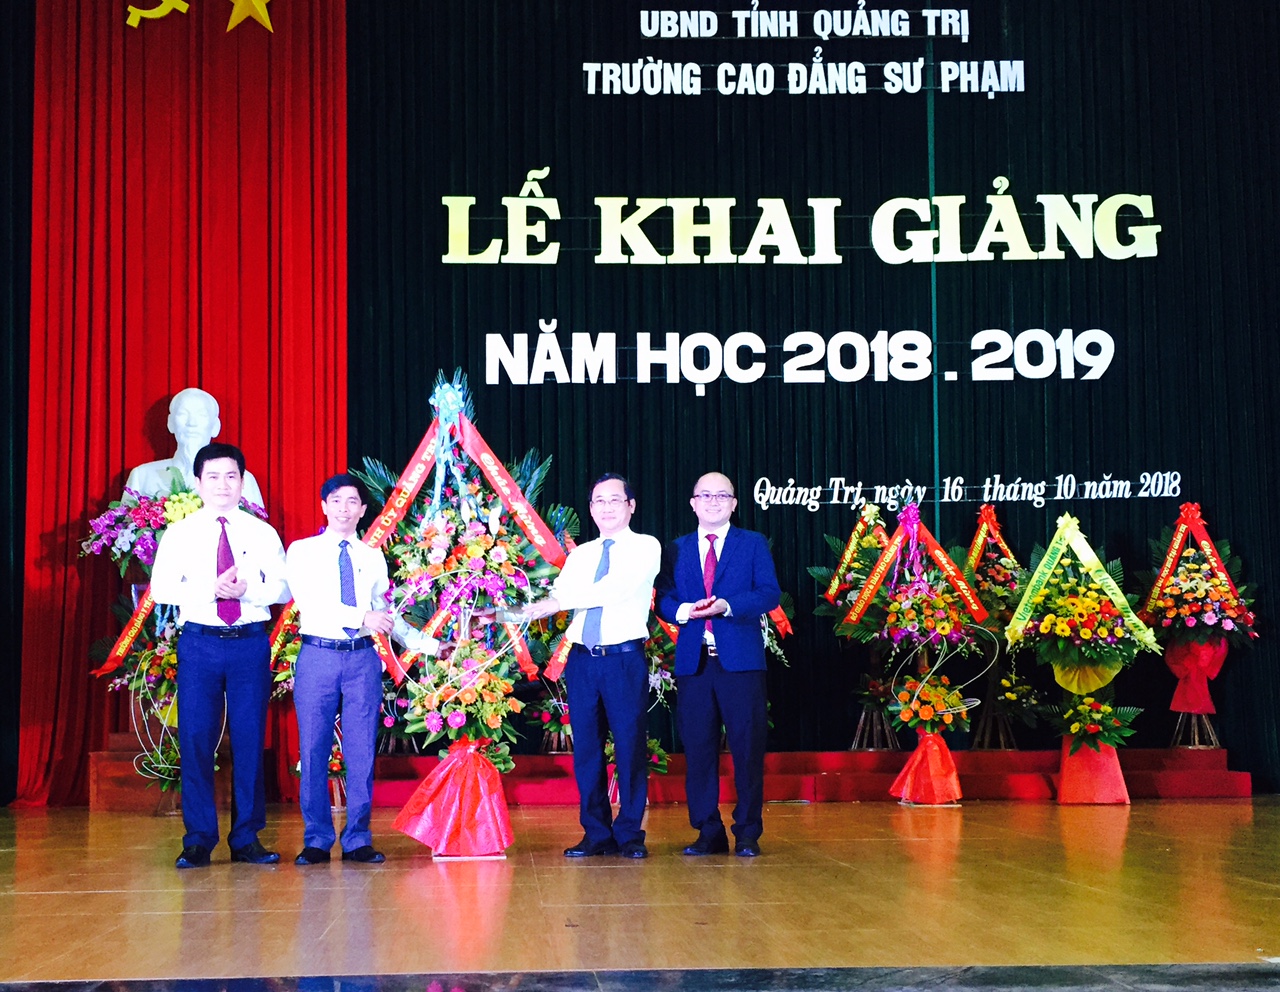 Trường Cao đẳng Sư phạm Quảng Trị tổ chức khai giảng năm học 2018 – 2019